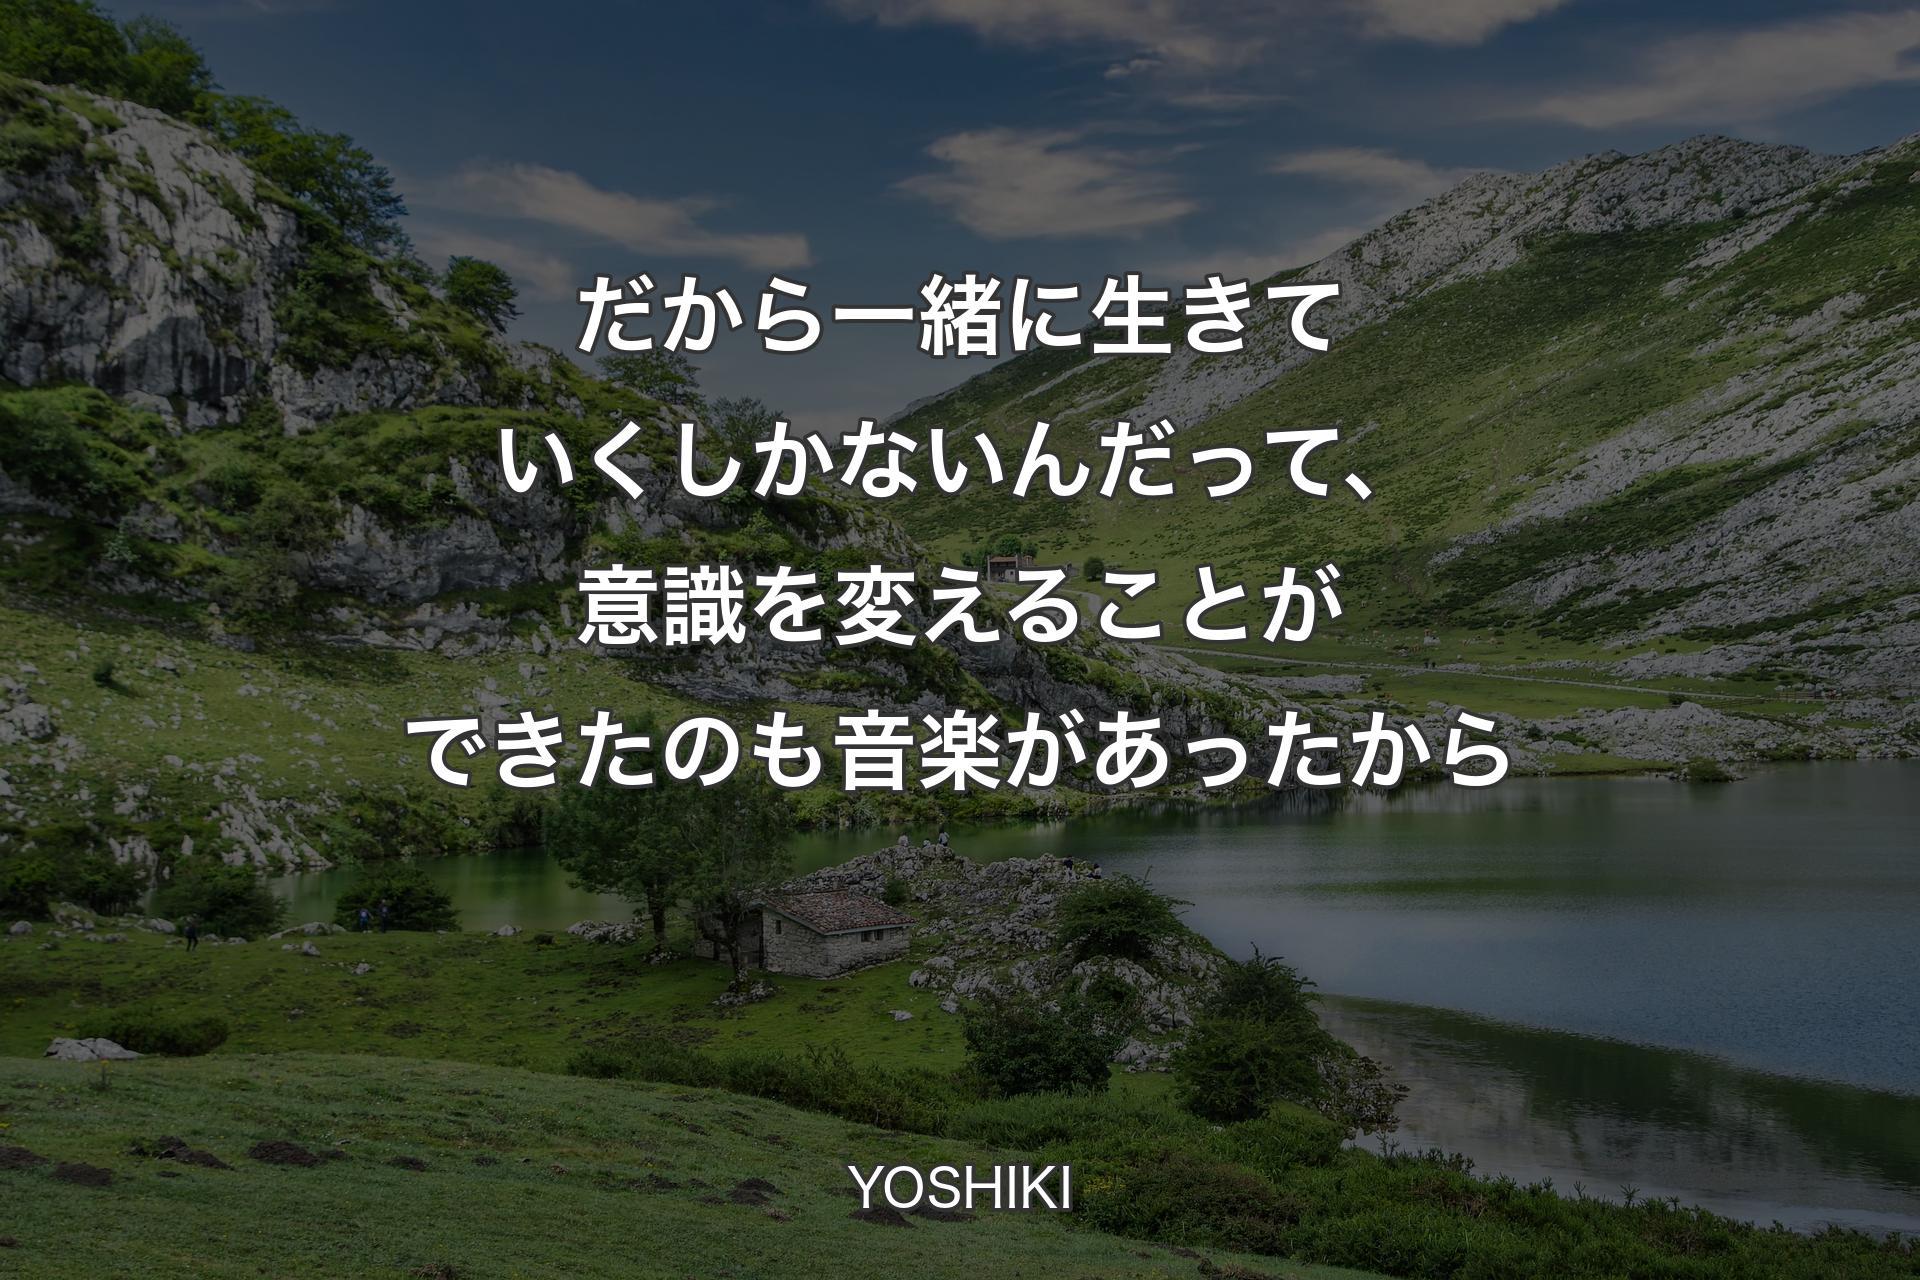 【背景1】だから一緒に生きていくしかないんだって、意識を変えることができたのも音楽があったから - YOSHIKI